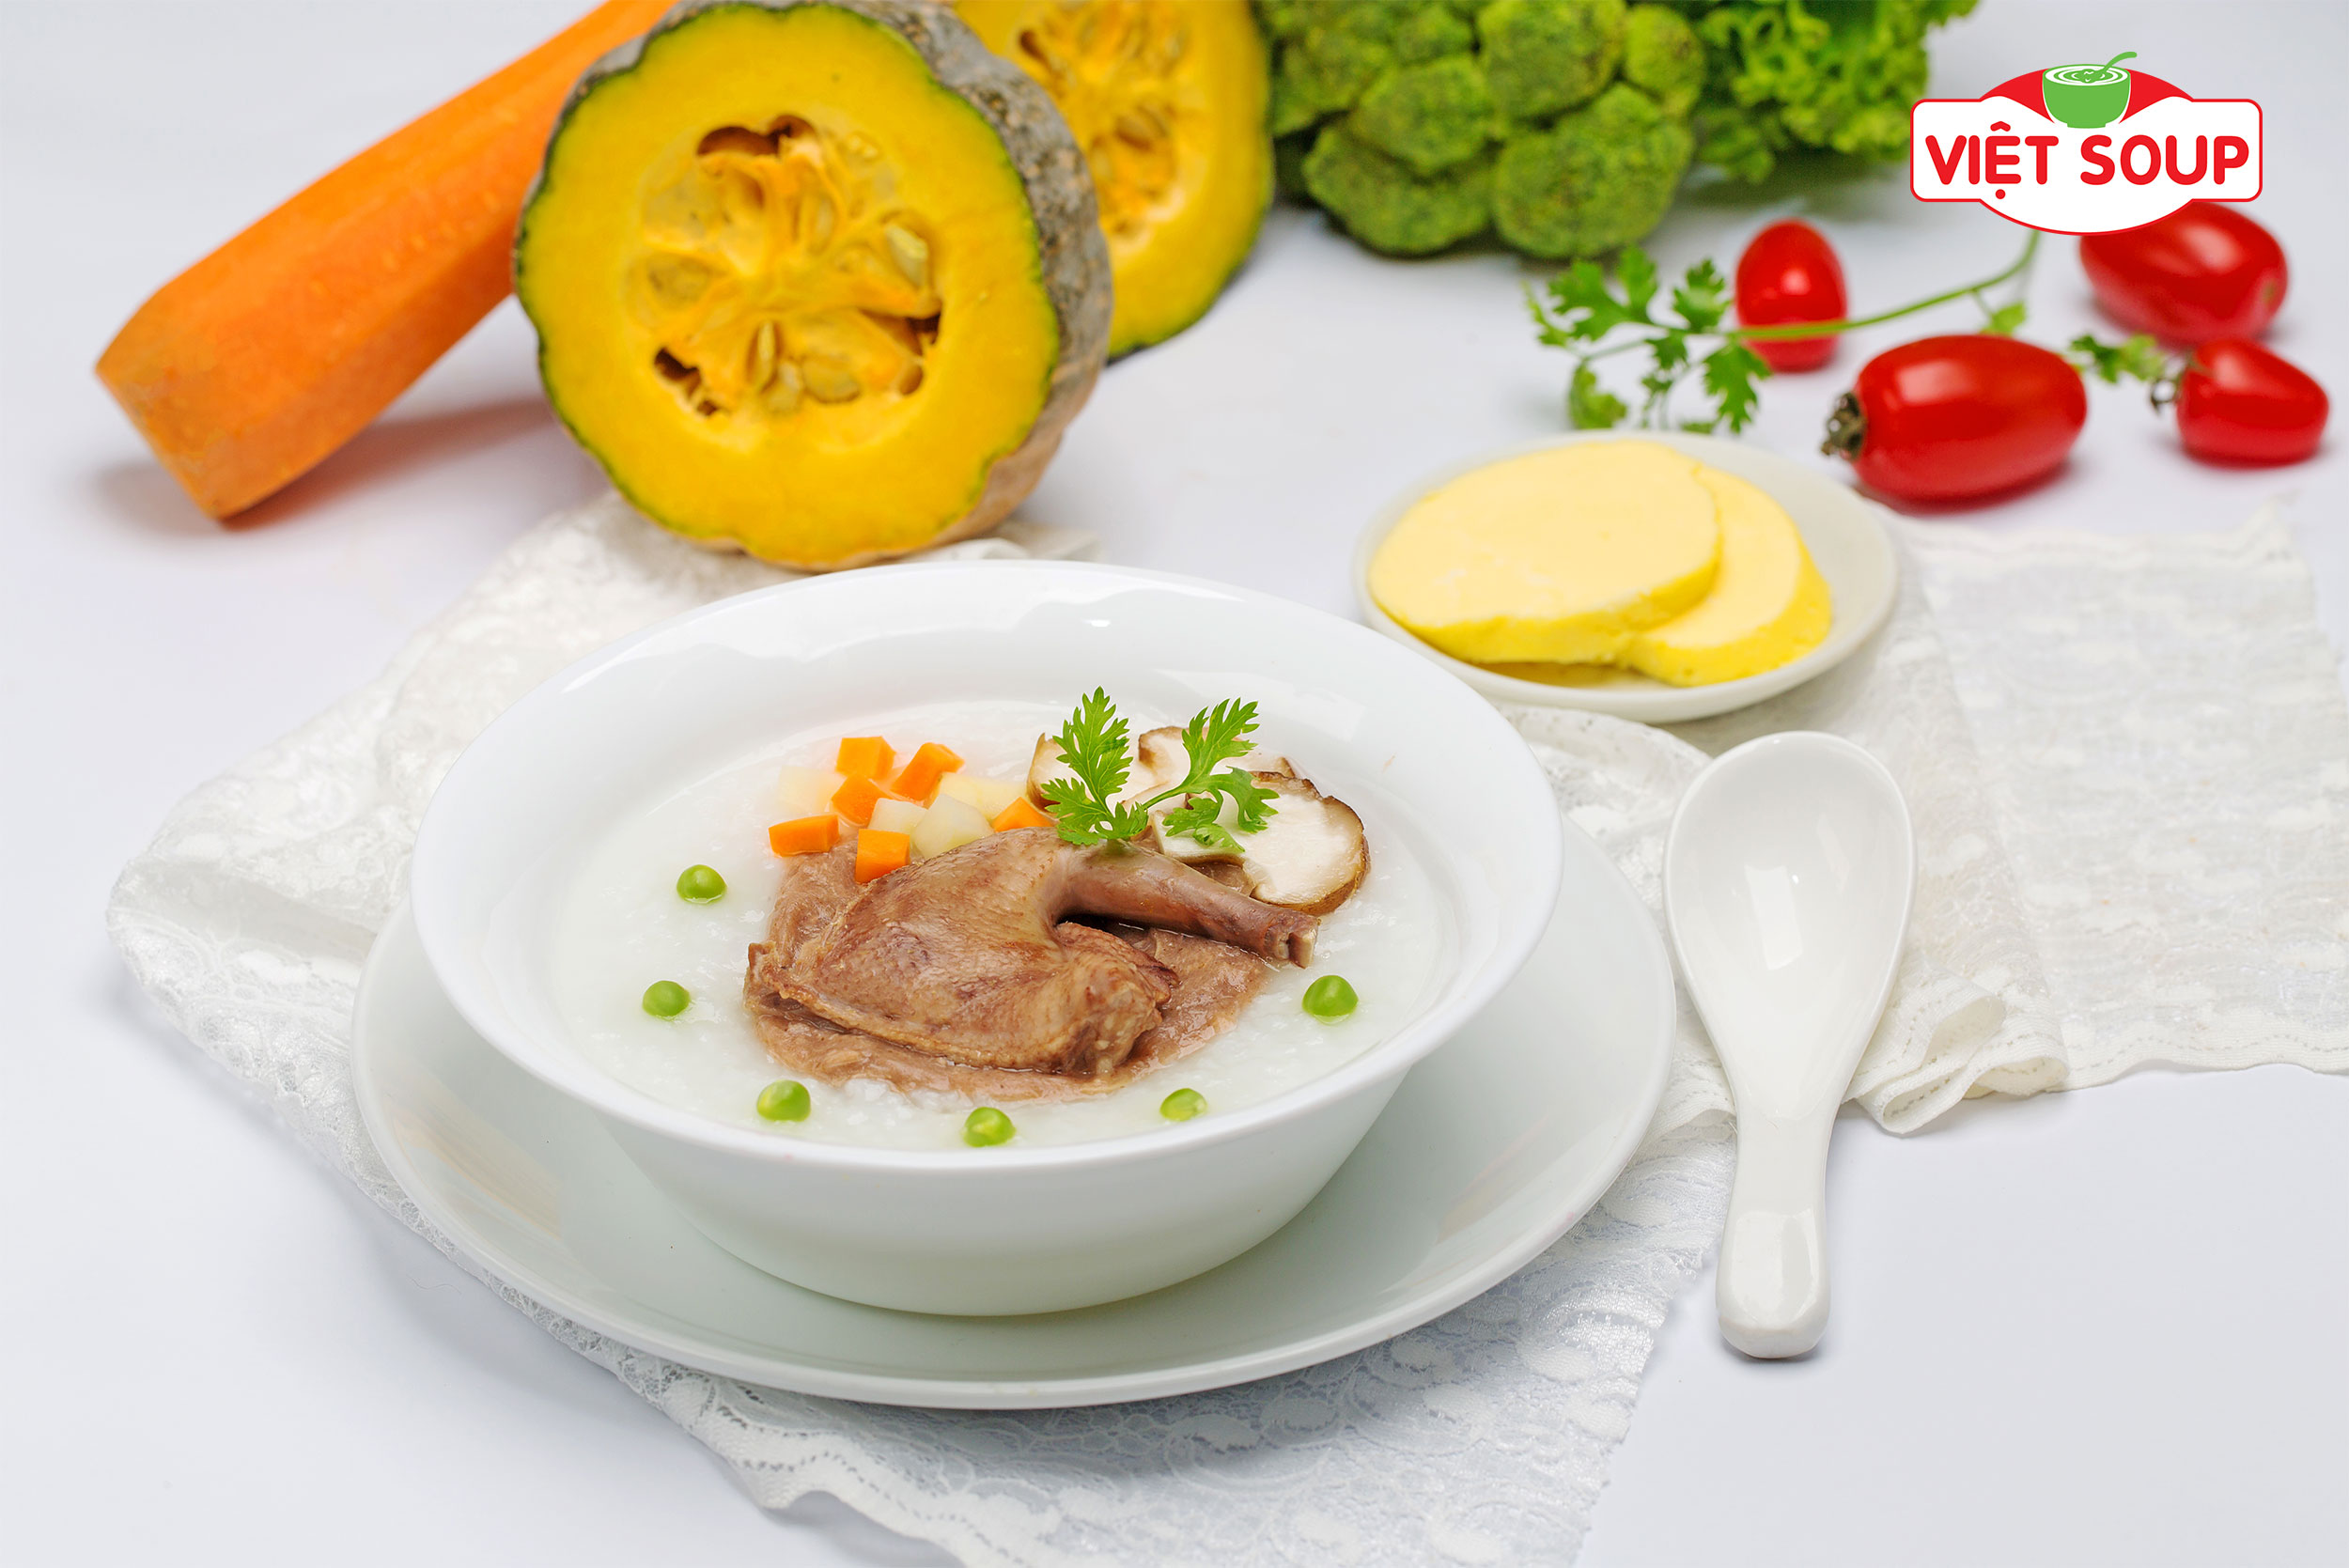 Giới thiệu món cháo dinh dưỡng bồ câu tại Việt Soup